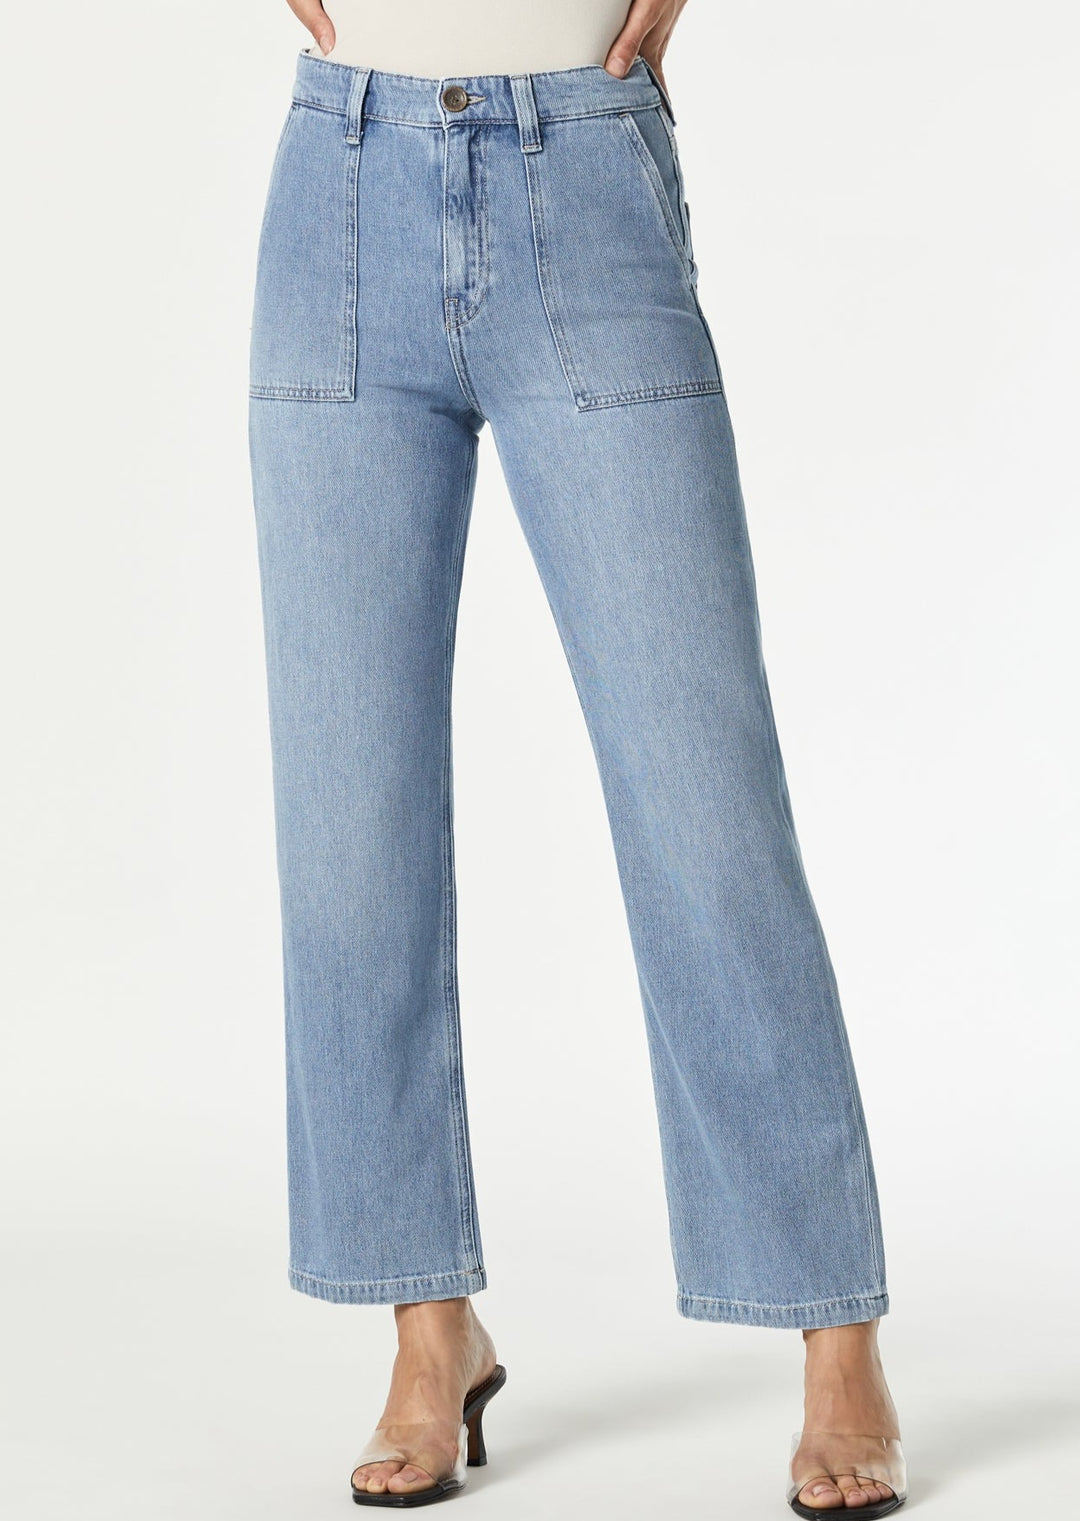 Shop Women's Jeans & Denim Tops Online